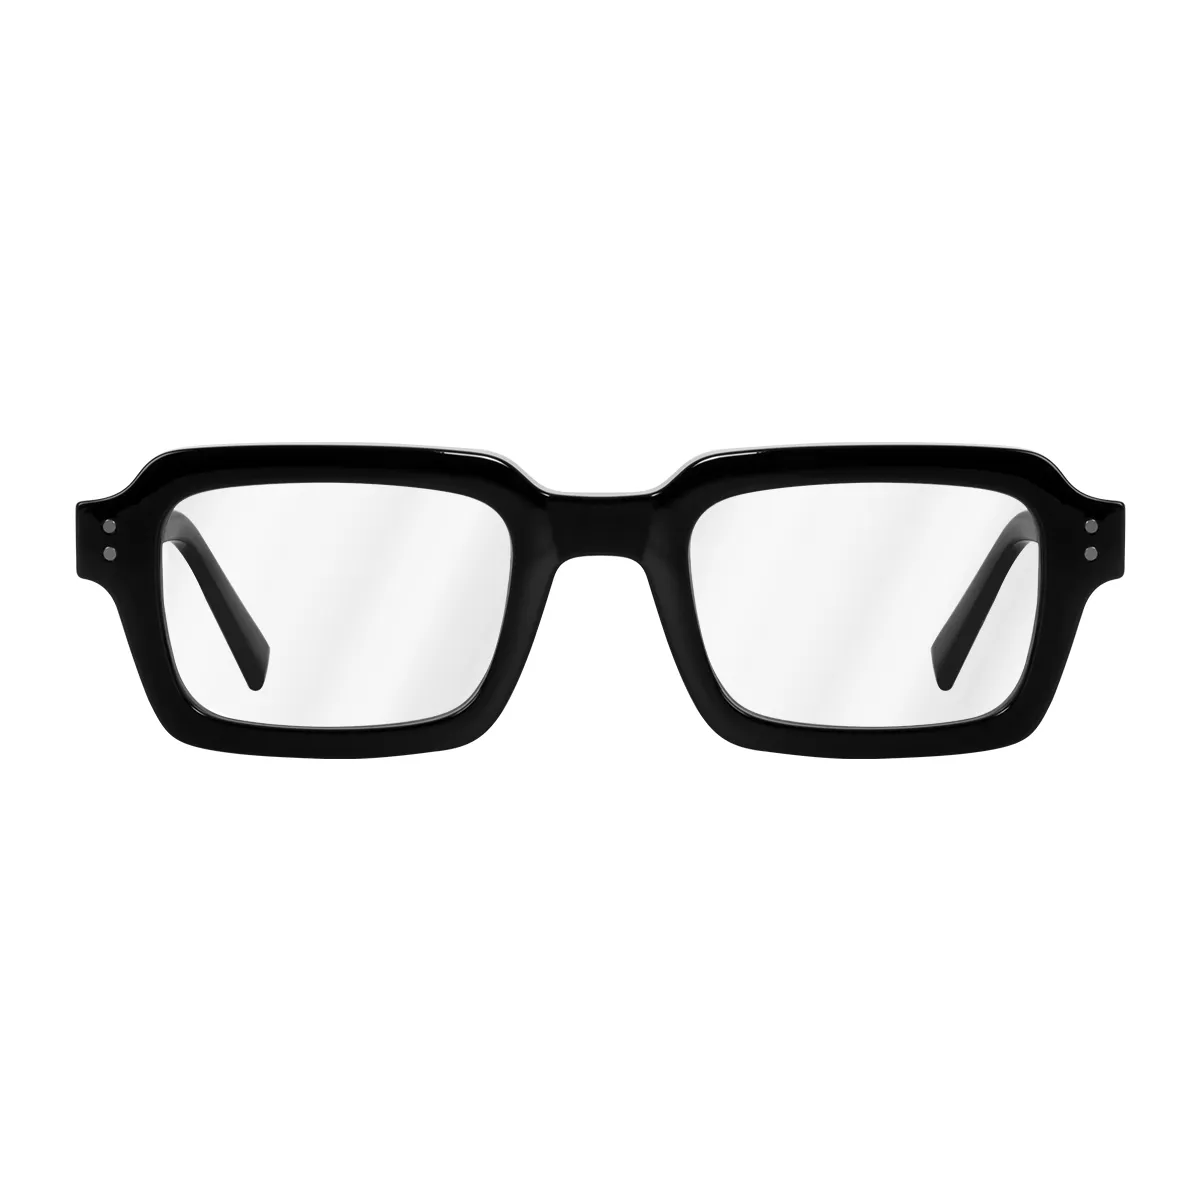 Katharine - Square Black Glasses for Women